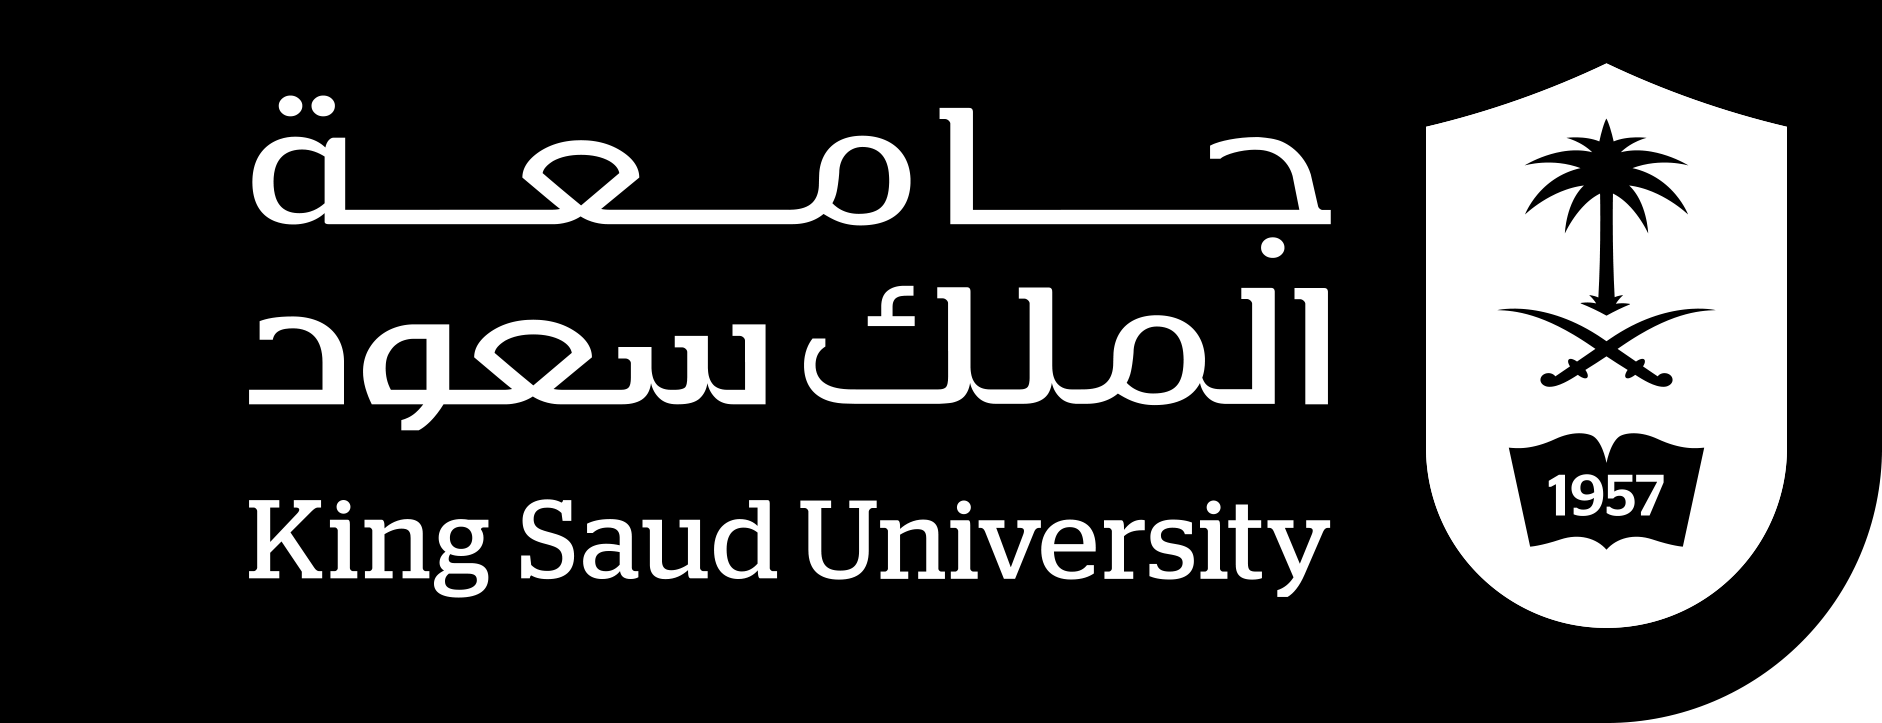 شعار جامعة الملك سعود الجديد بالأبيض والأسود